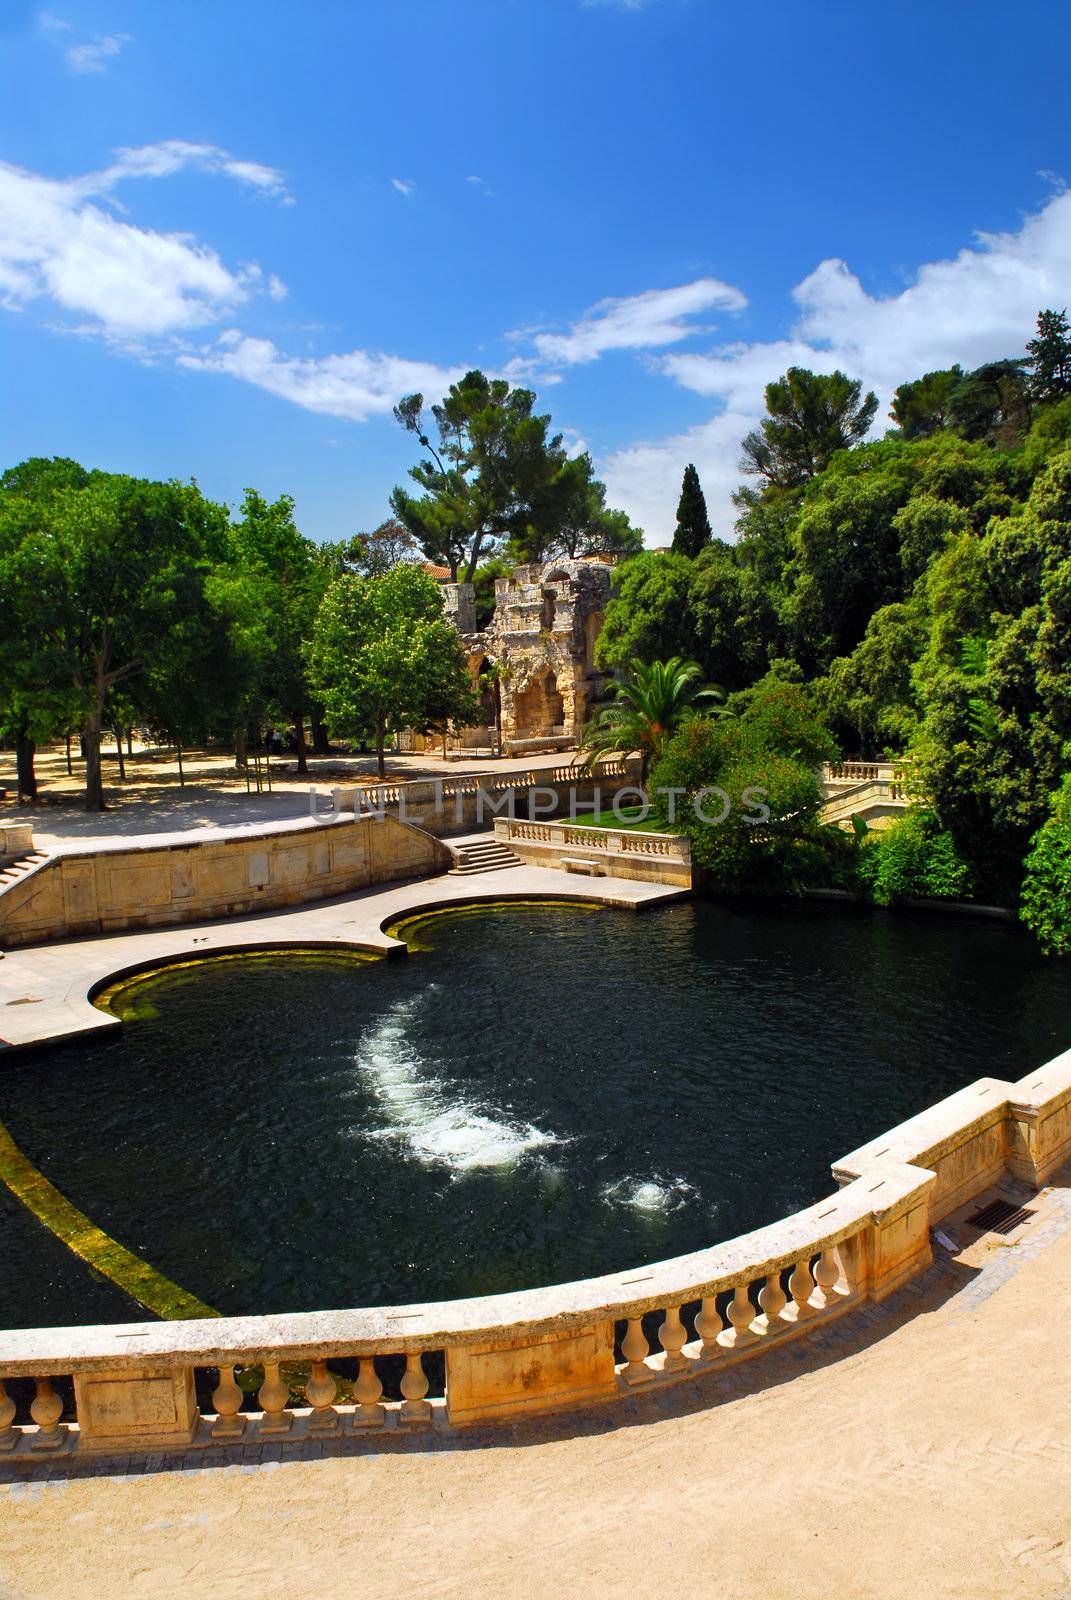 Jardin de la Fontaine in Nimes France by elenathewise